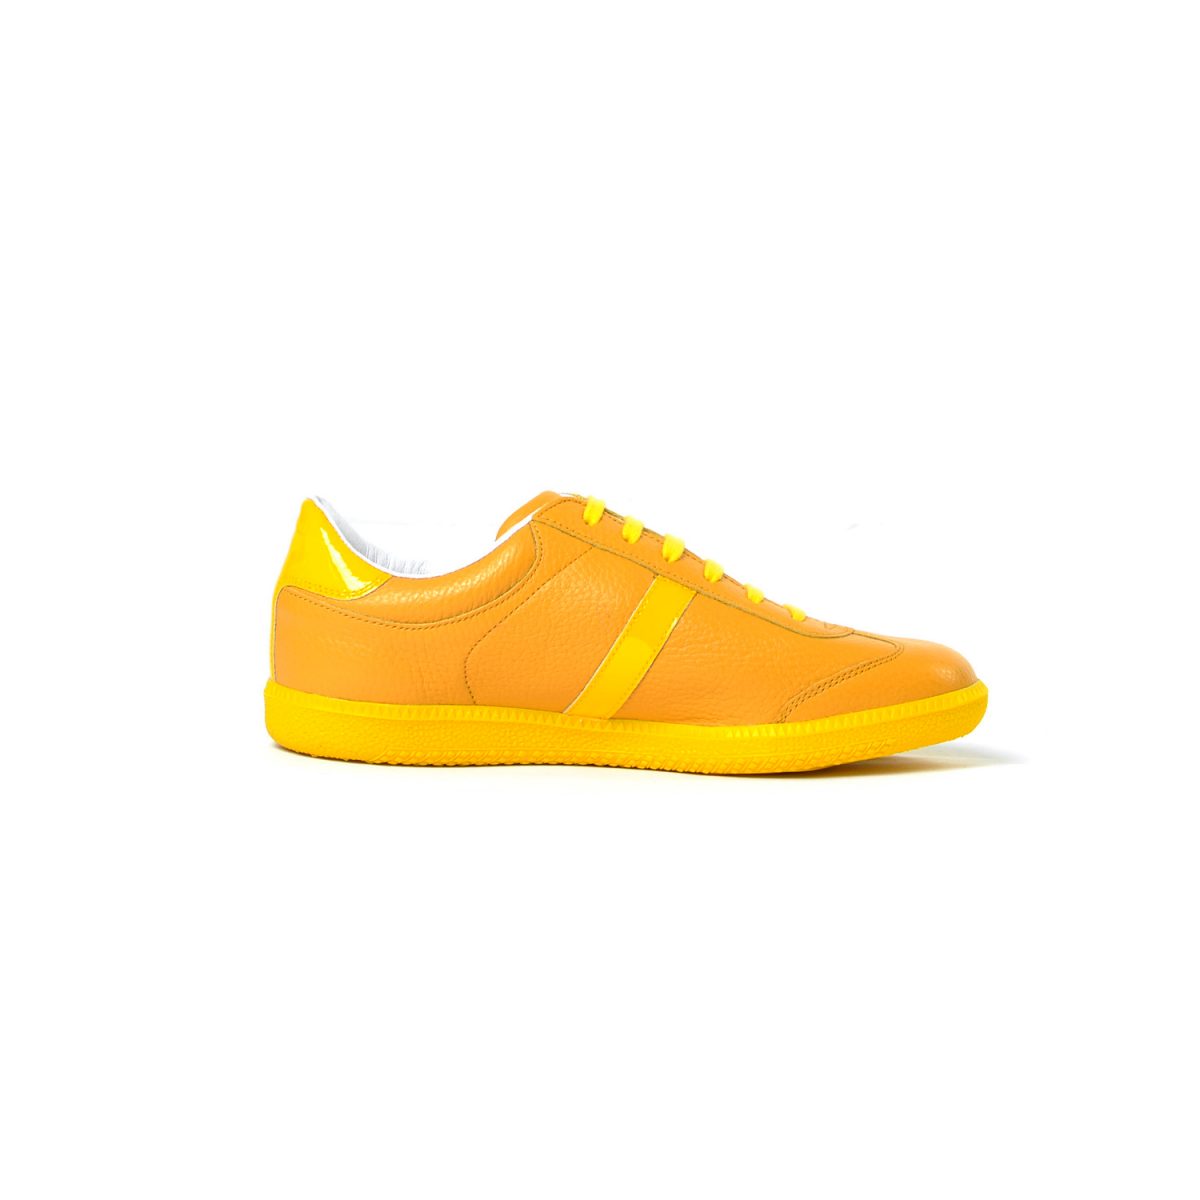 Tisza cipő - Compakt - Sárga-lakk